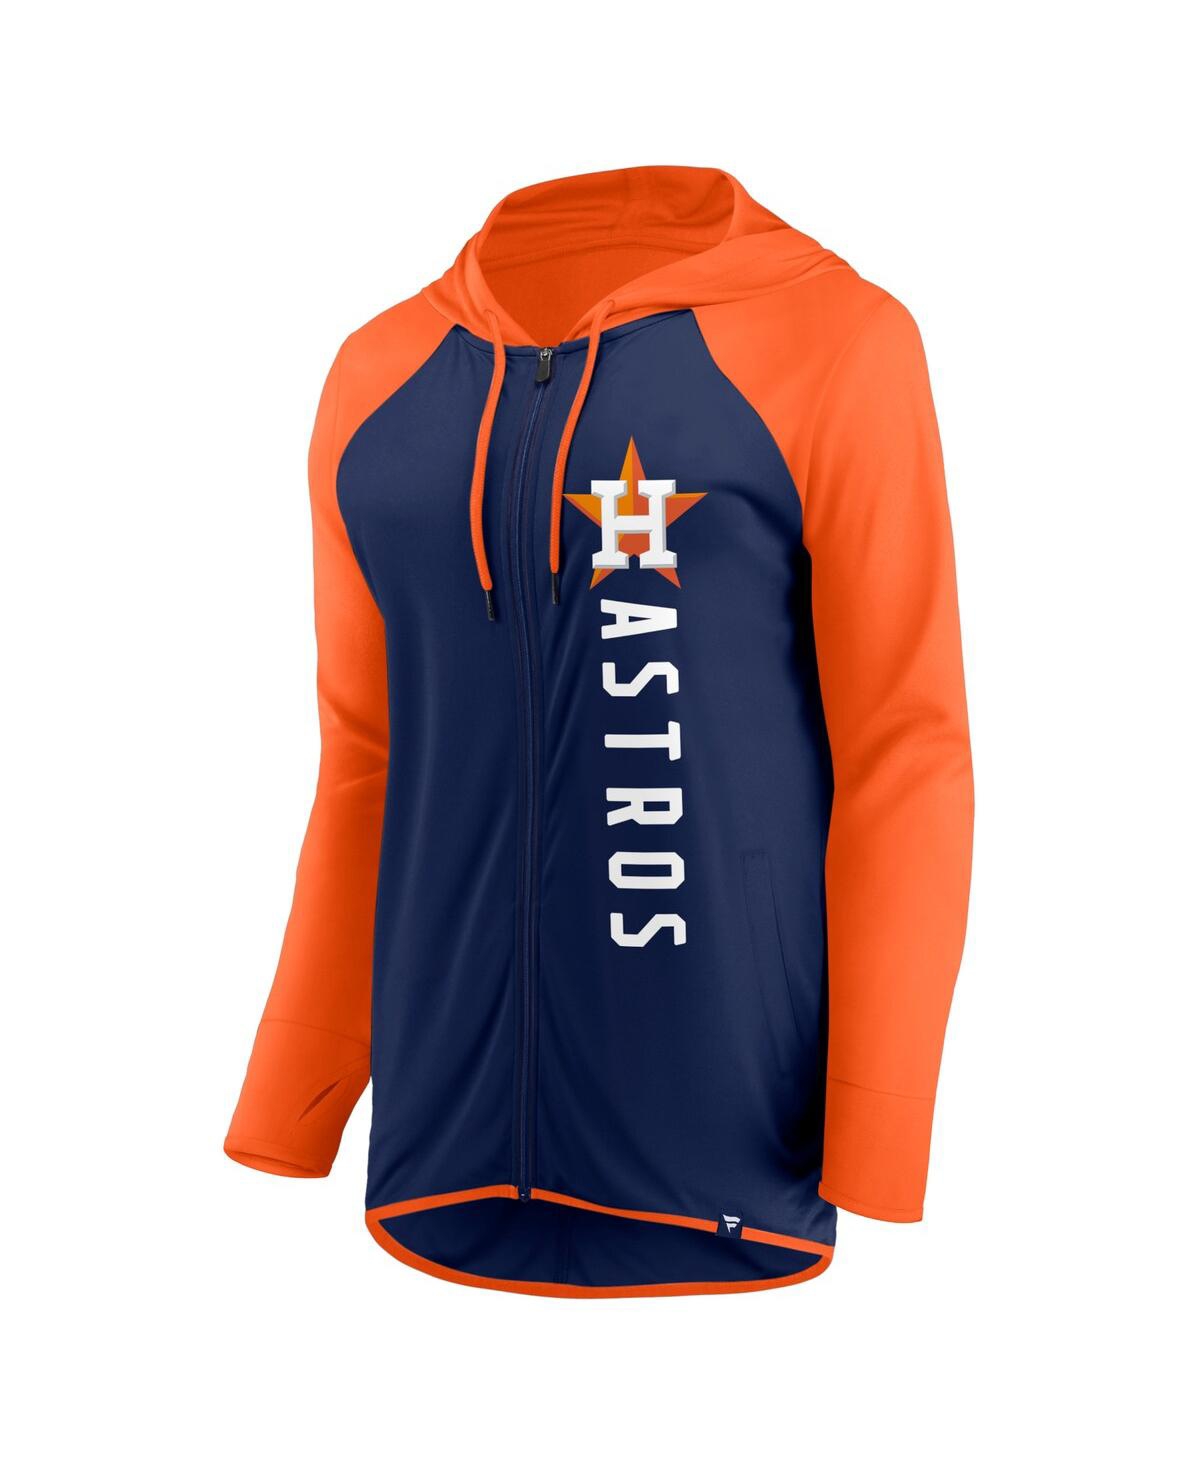 Houston Astros Fanatics Branded Women's Fan T-Shirt Combo Set - Navy/Orange